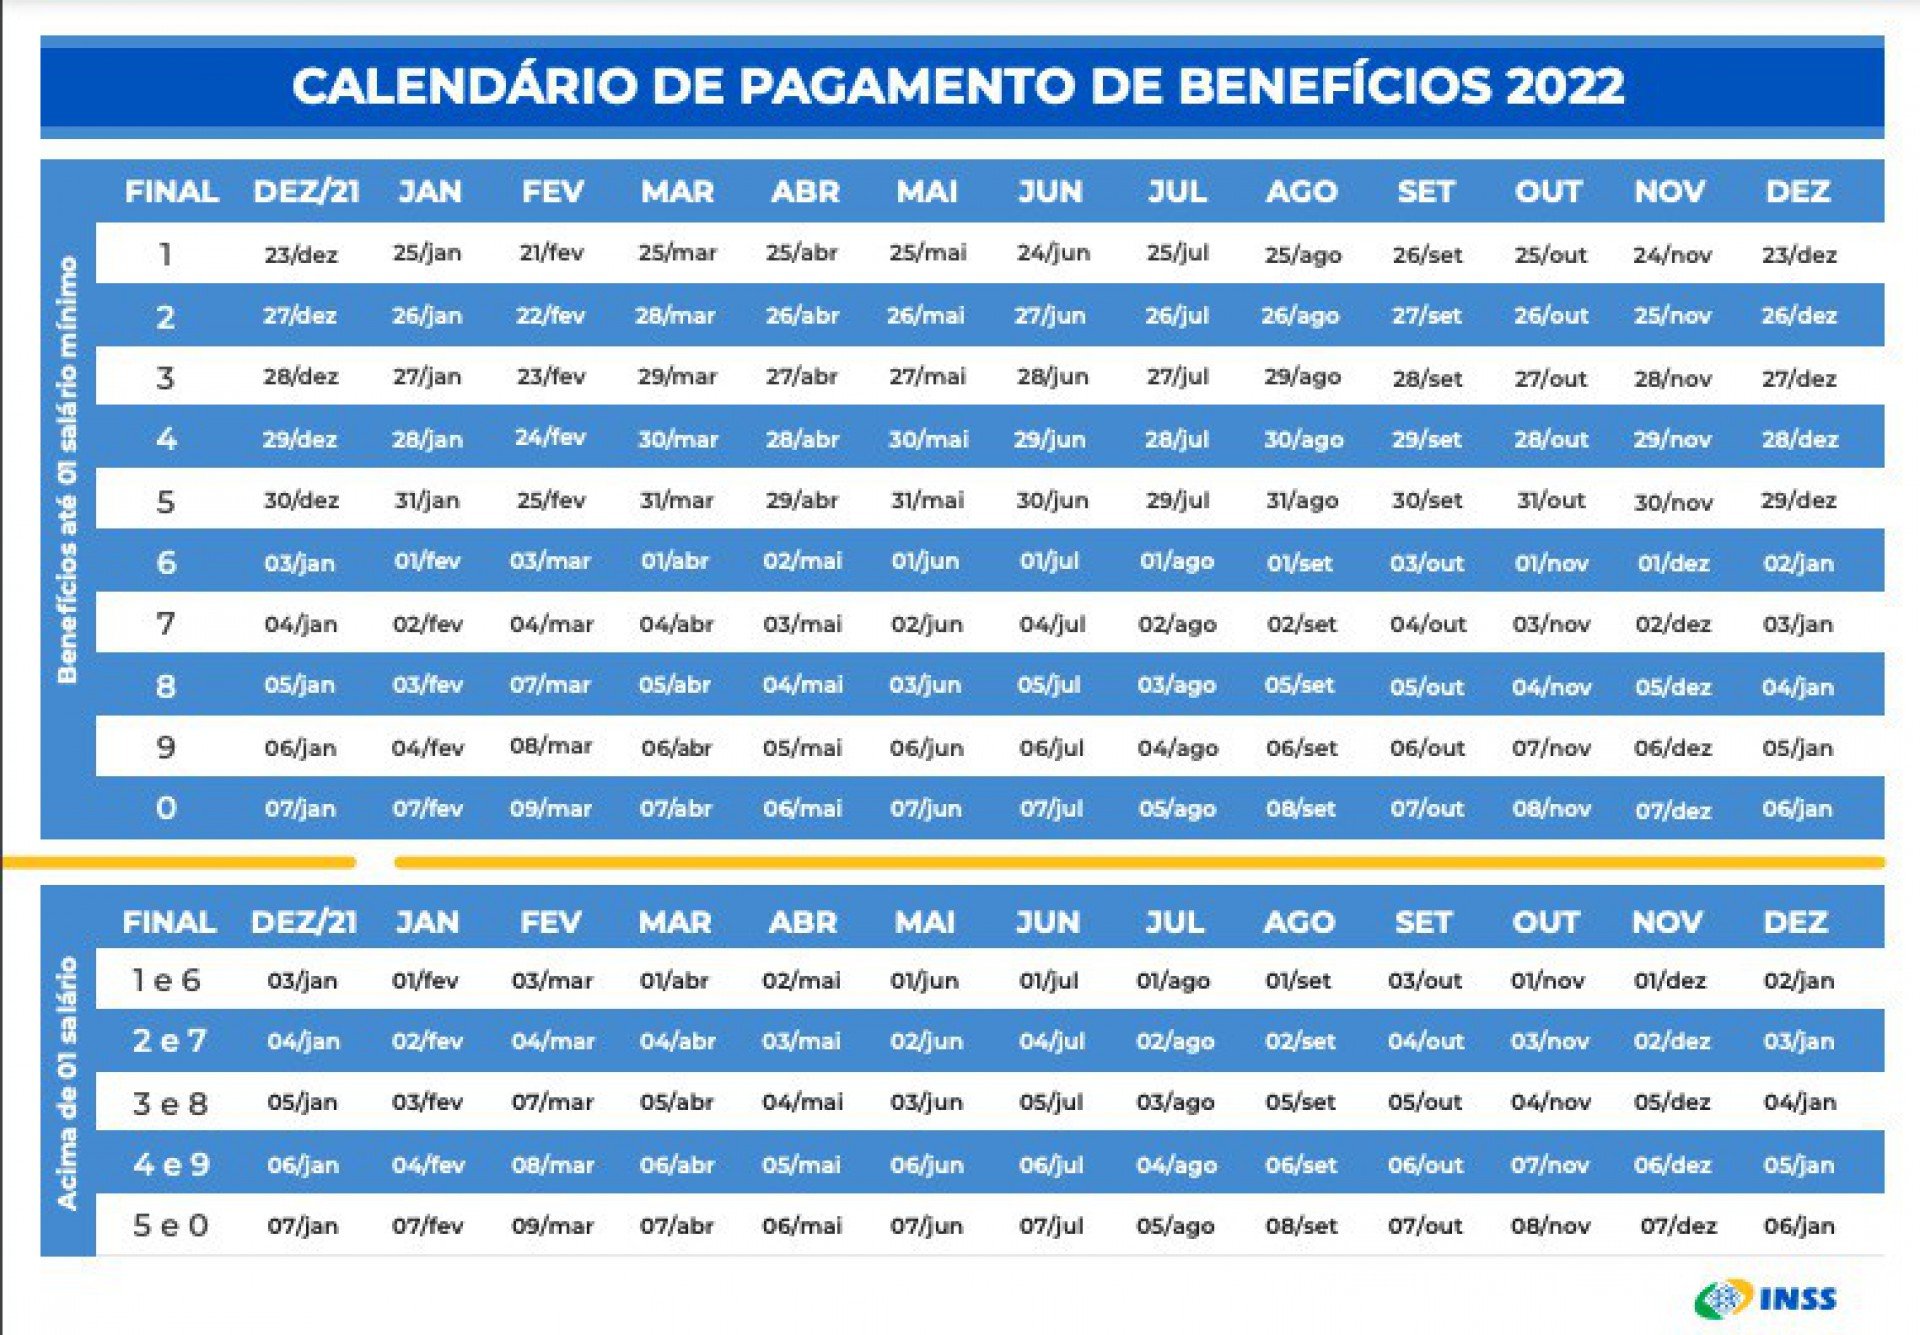 Calendário de pagamentos do INSS para 2022 - Divulgação